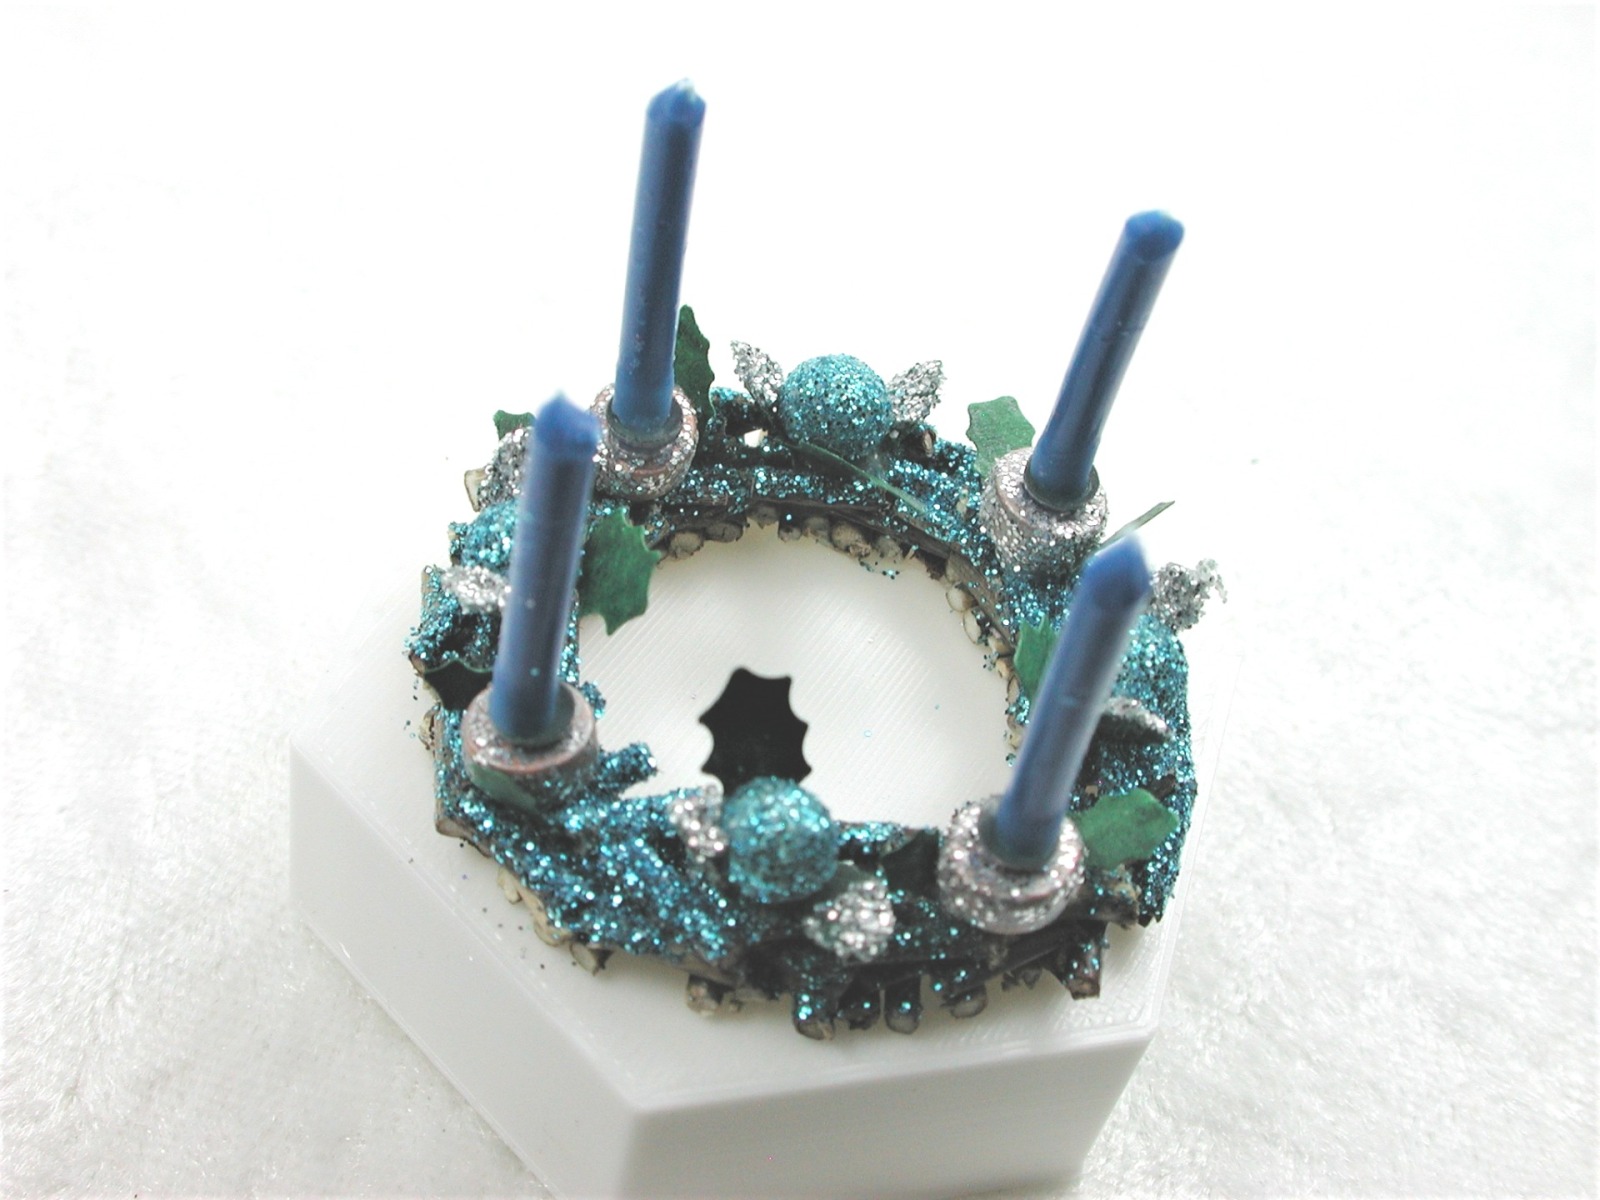 Adventskranz aus Holz mit echten blauen Kerzen im Kerzenhalter und in blau gehaltene Dekoration 4